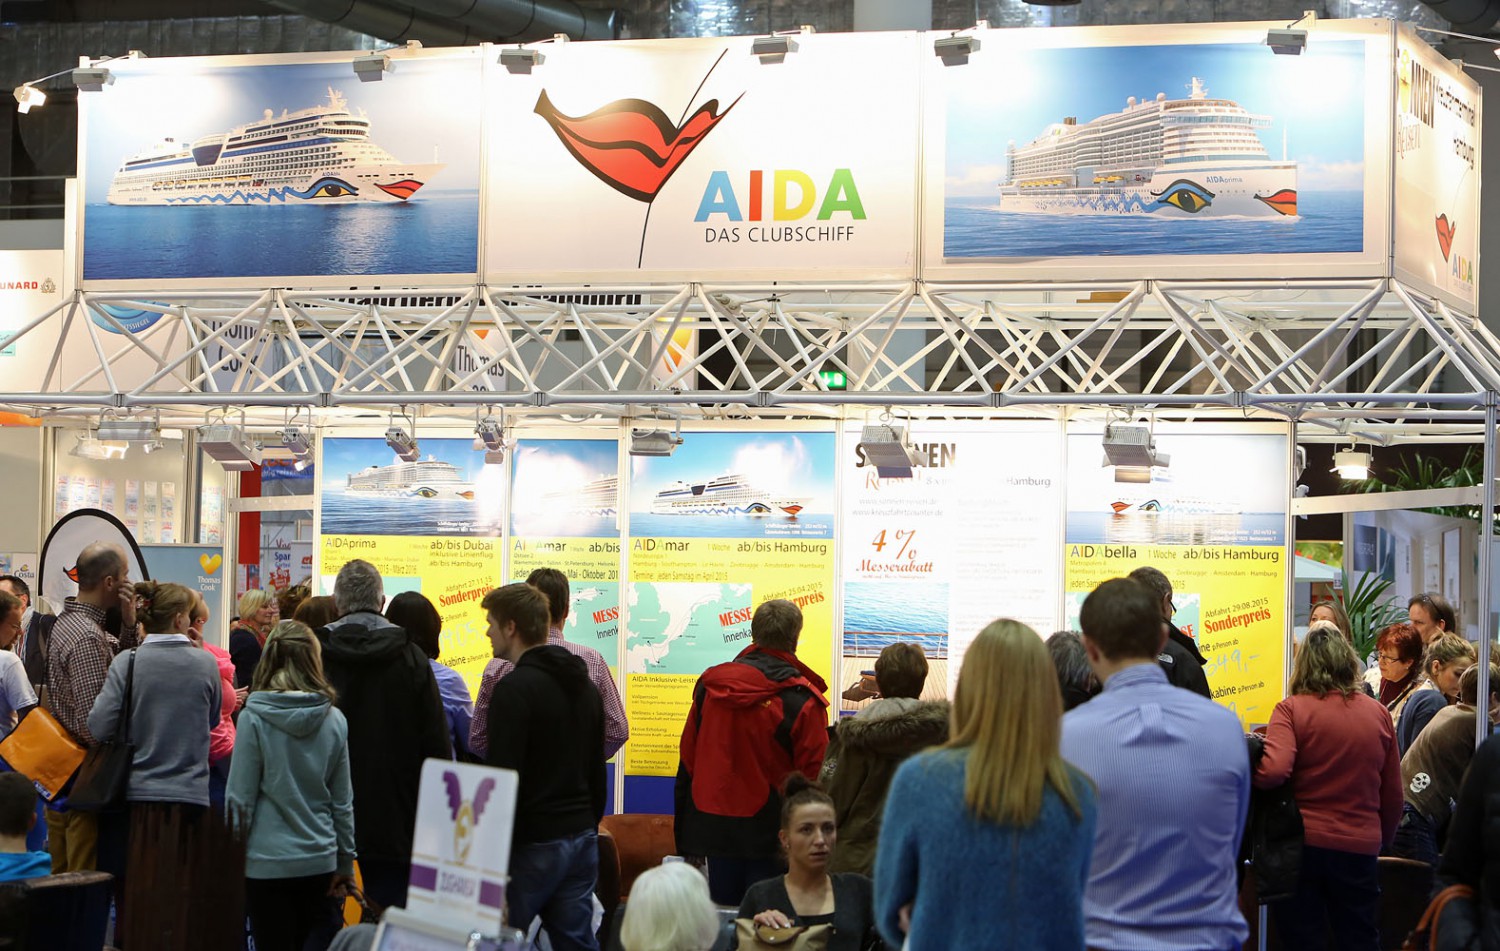 Aida-Cruises ist der größte Kreuzfahrtanbieter in Deutschland.